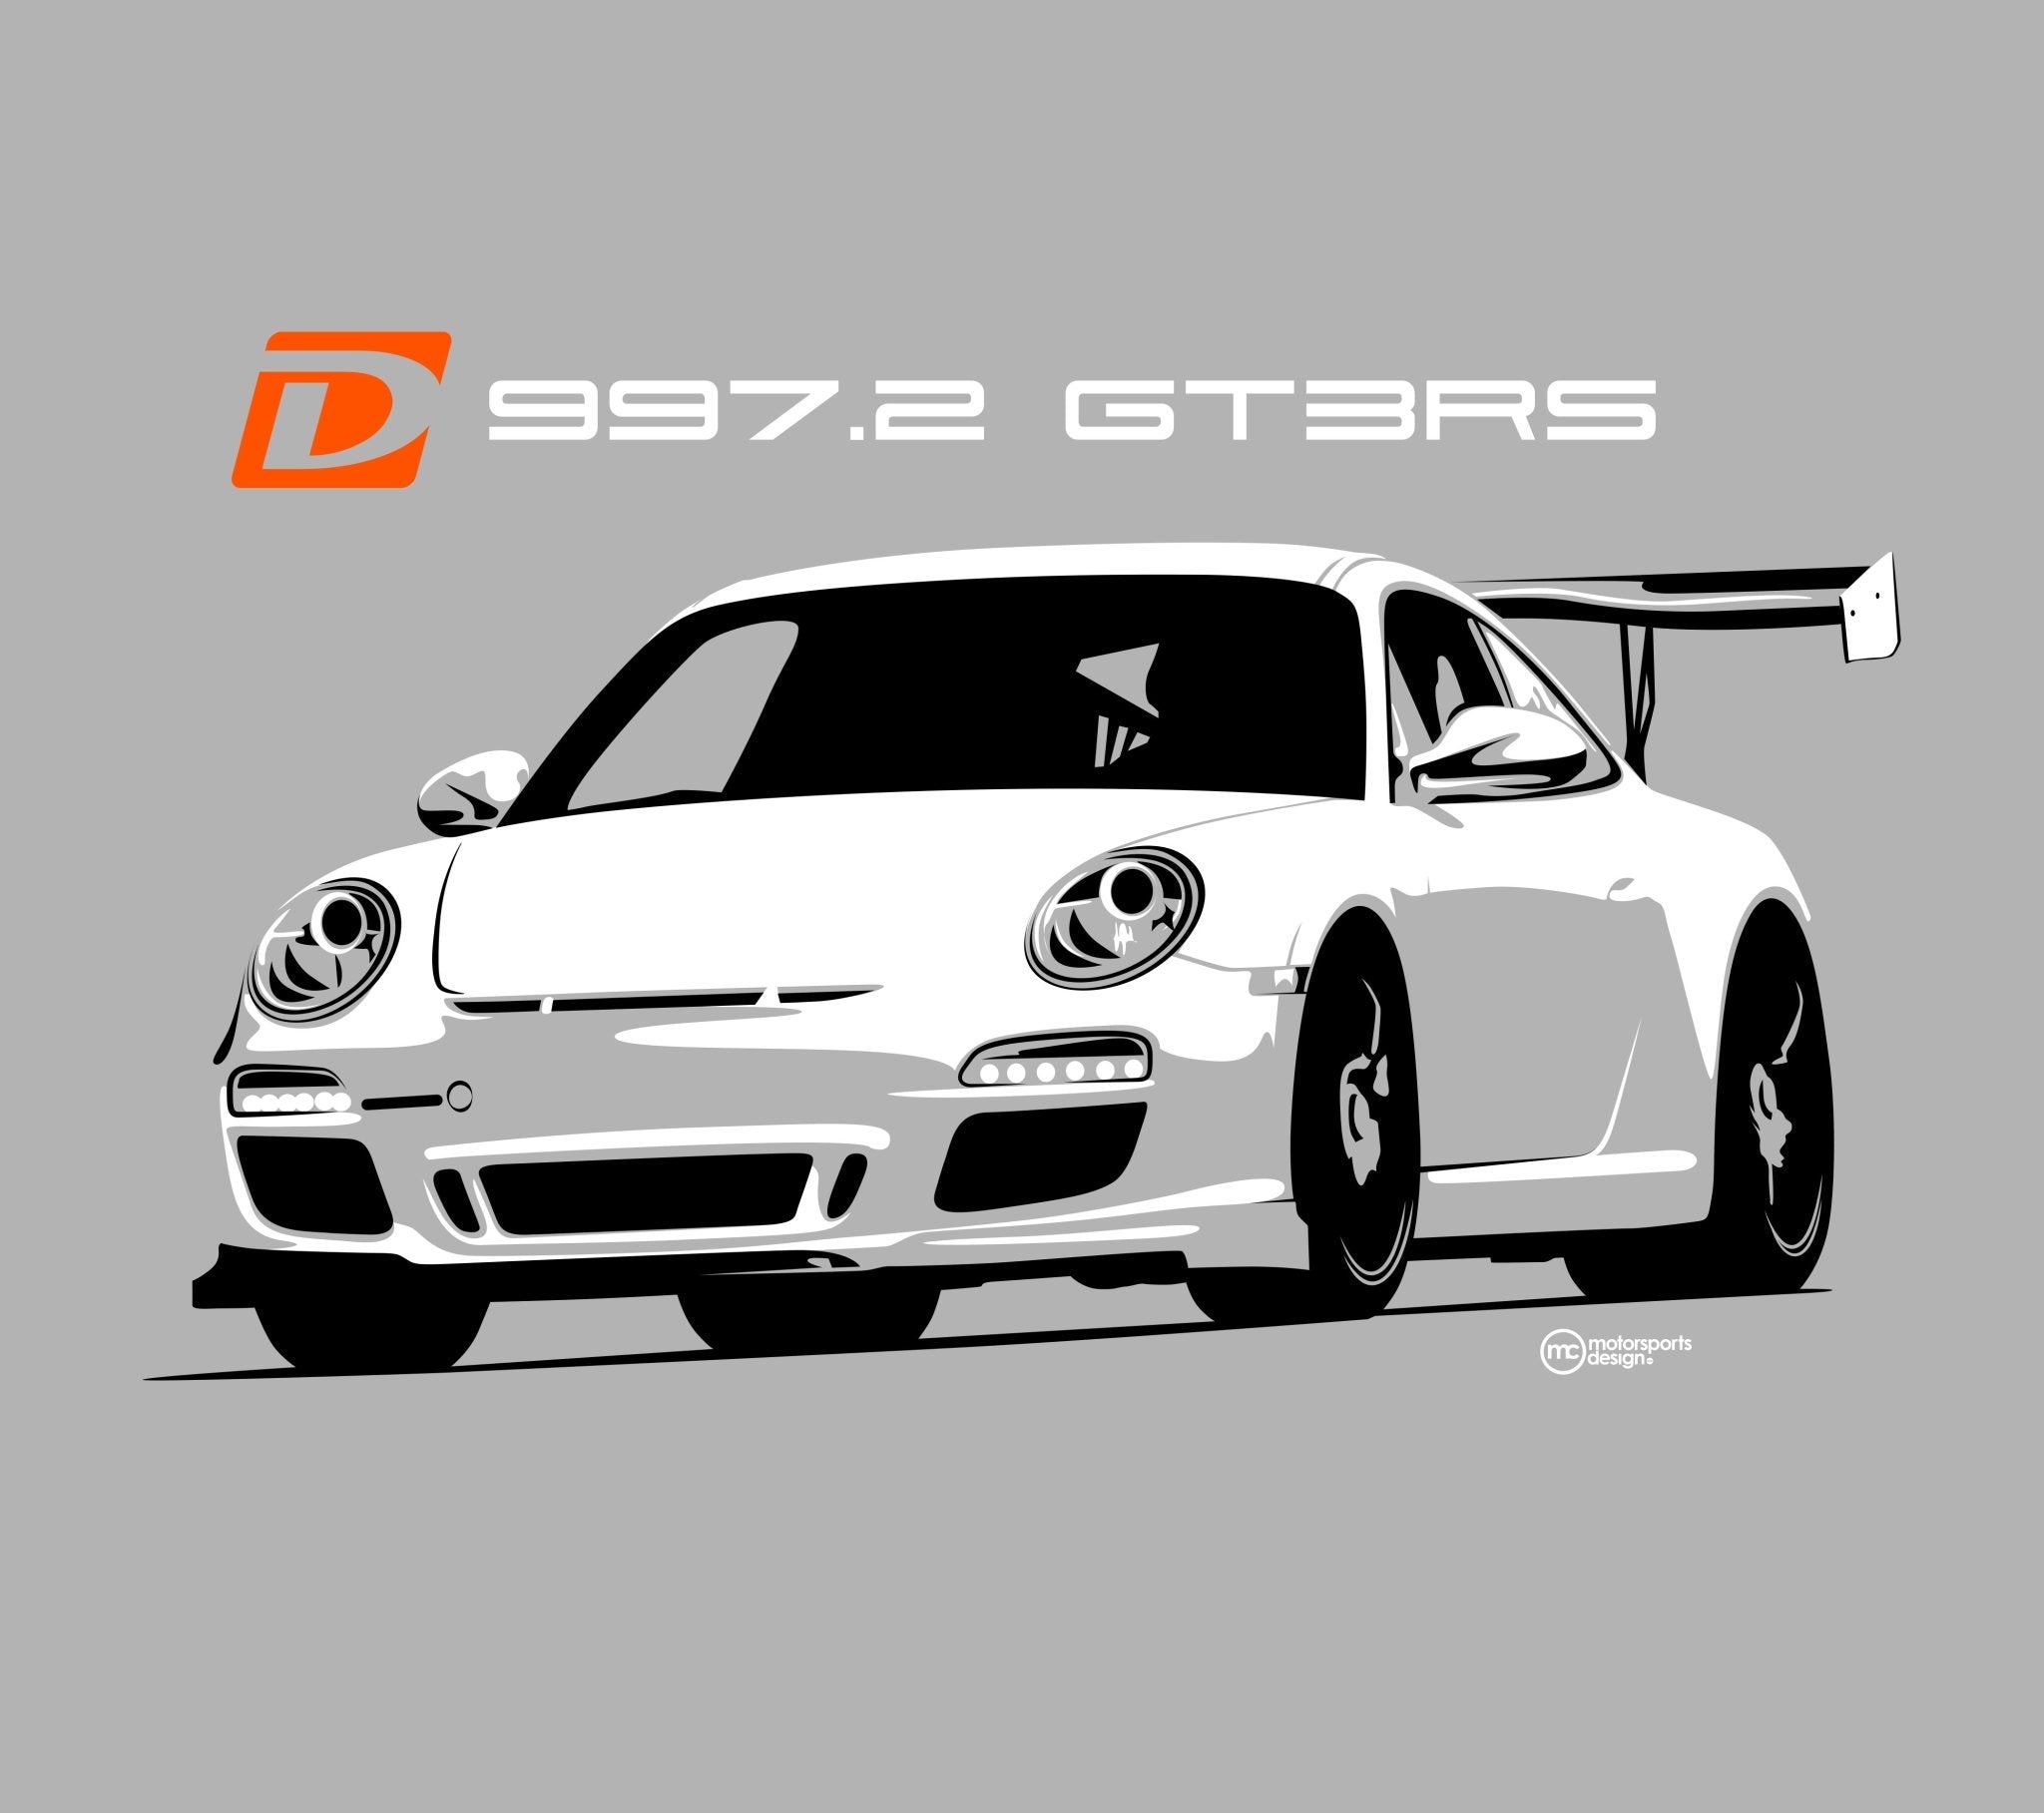 Dundon Motorsports 997.2 GT3 RS T-shirt - Dundon Motorsports